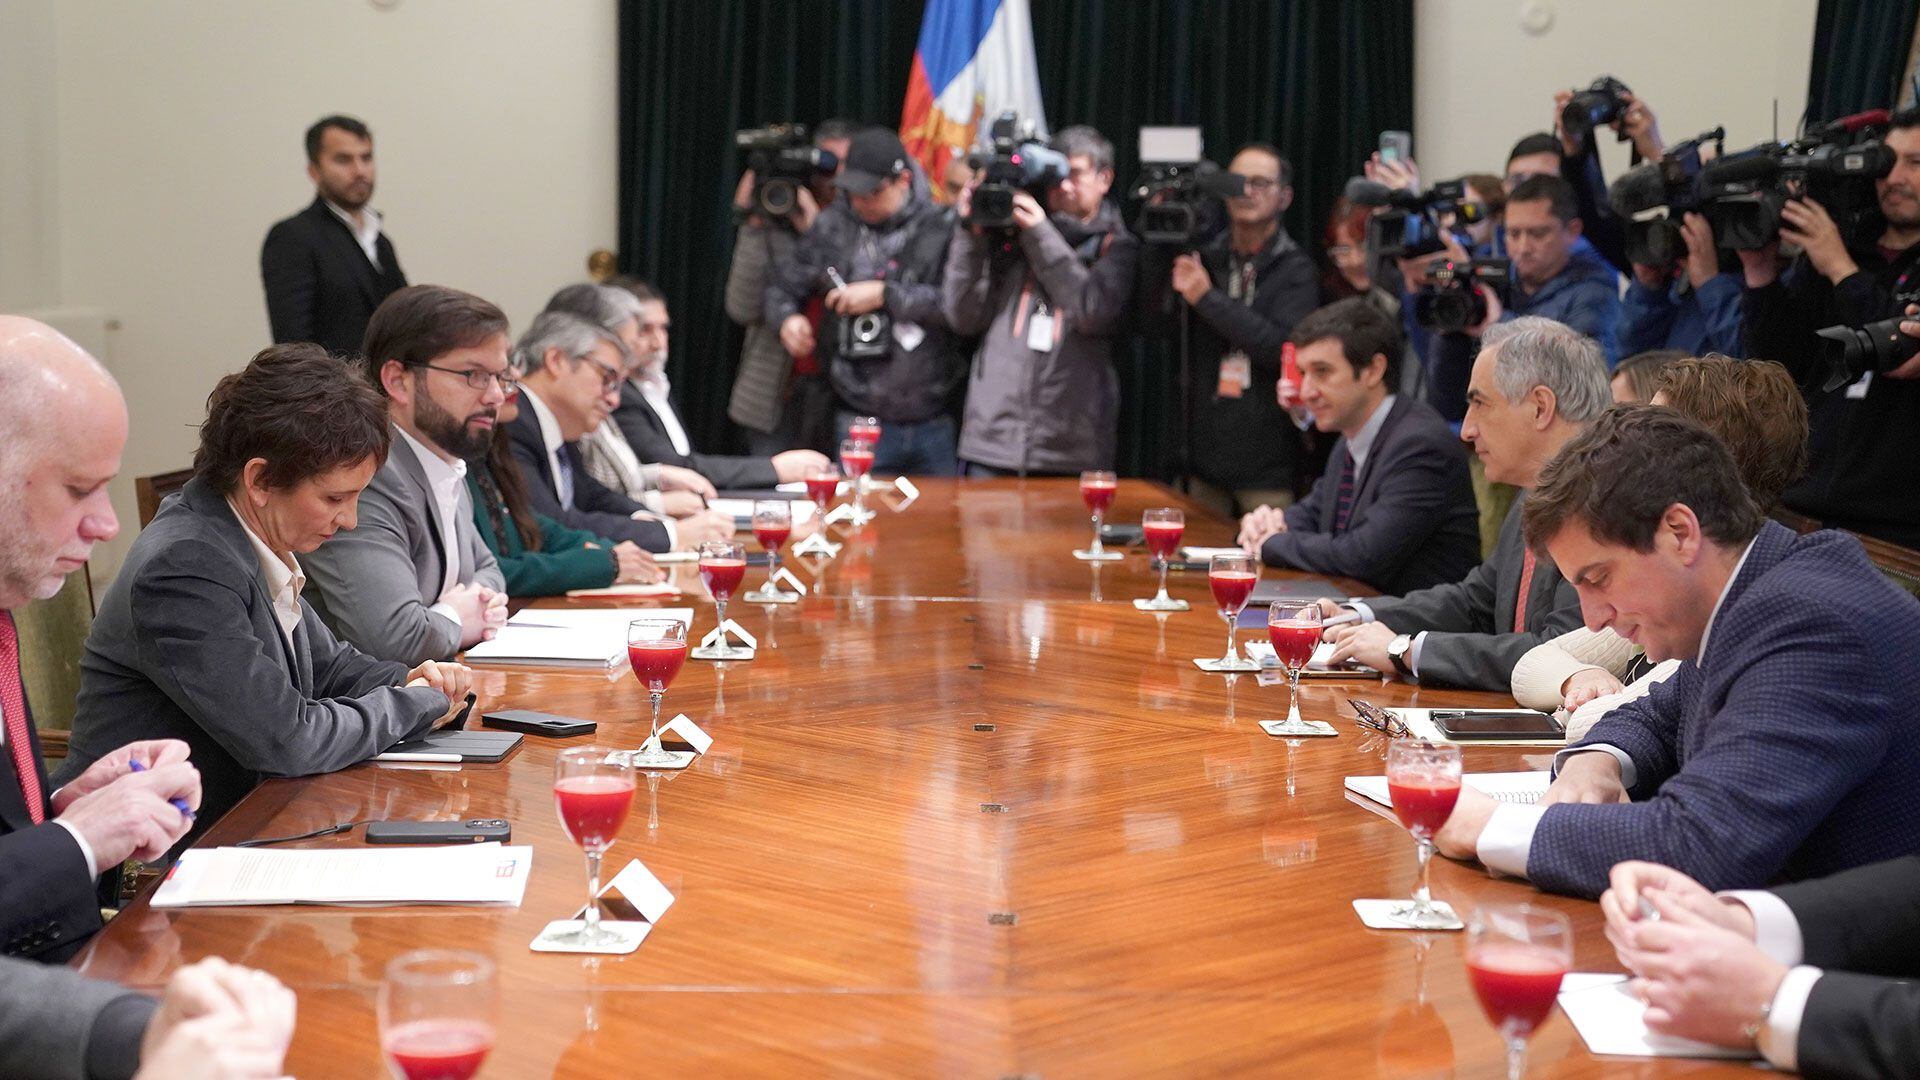 Gabriel Boric y su gabinete se reunieron con la oposición chilena en un encuentro largo y tenso - Infobae